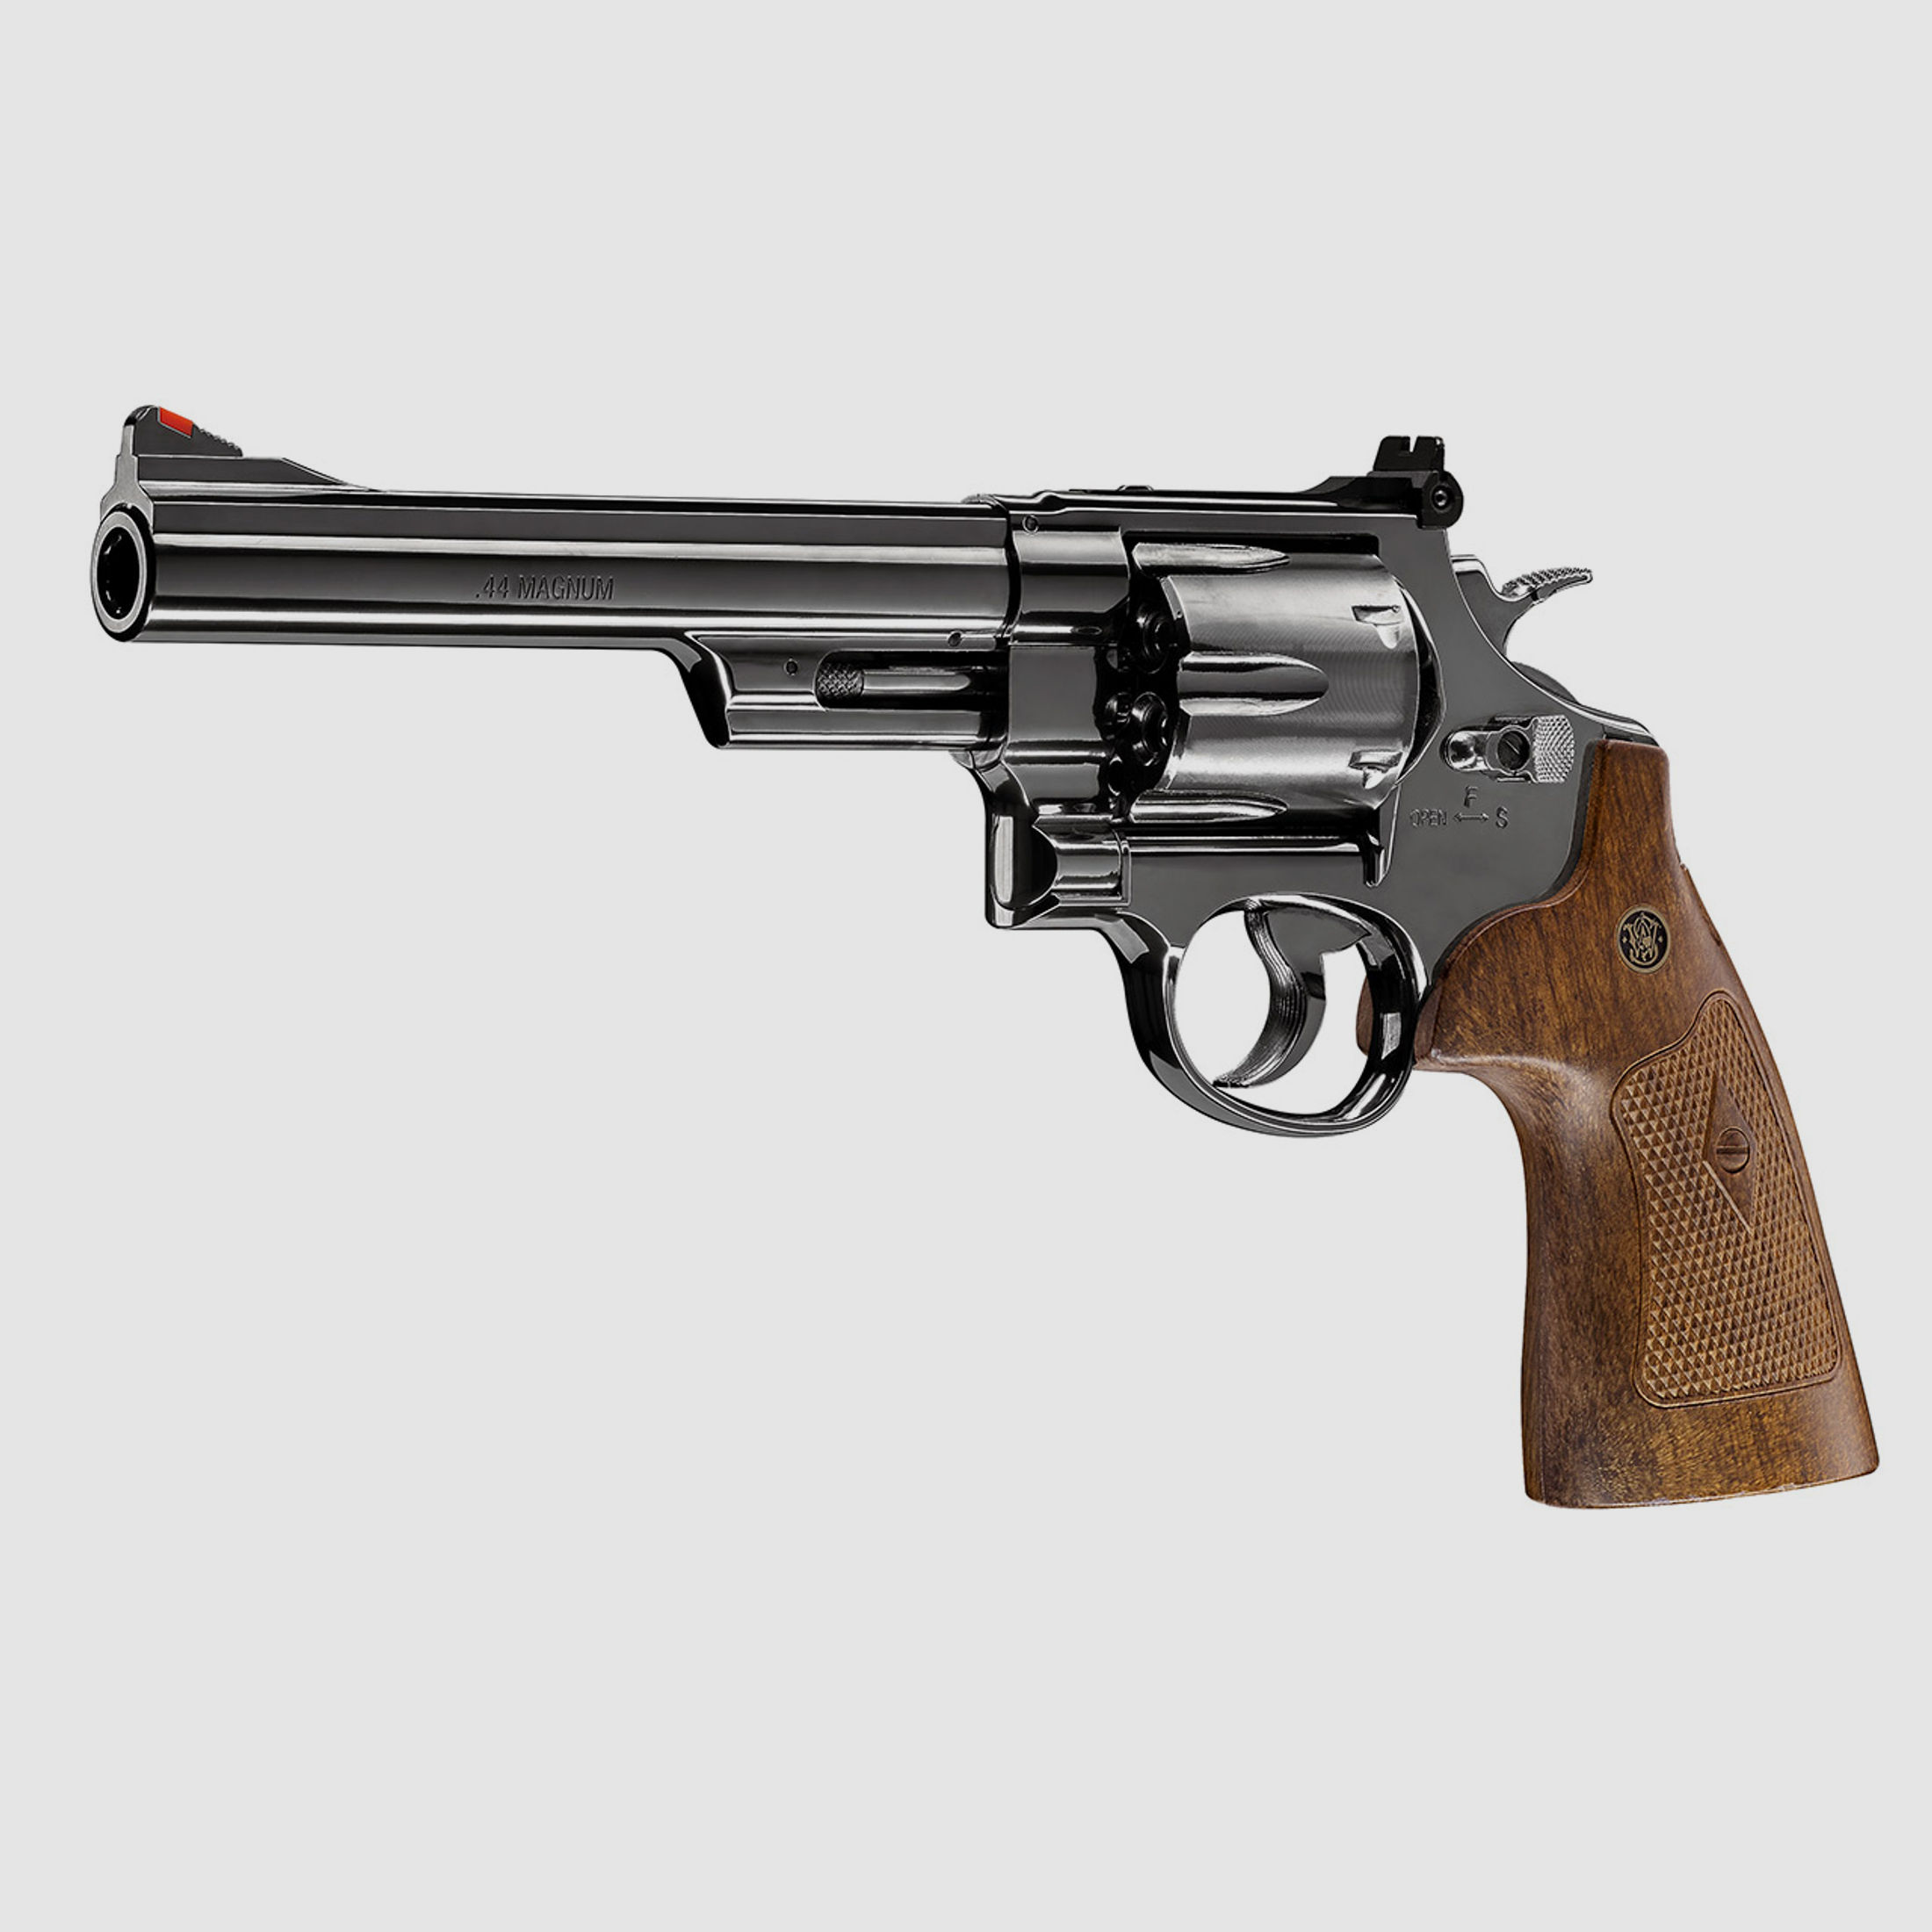 CO2 Revolver Smith & Wesson M29 6.5 Zoll hochglanzbrĂĽniert braune Griffschalen Kaliber 4,5 mm Diabolo (P18)